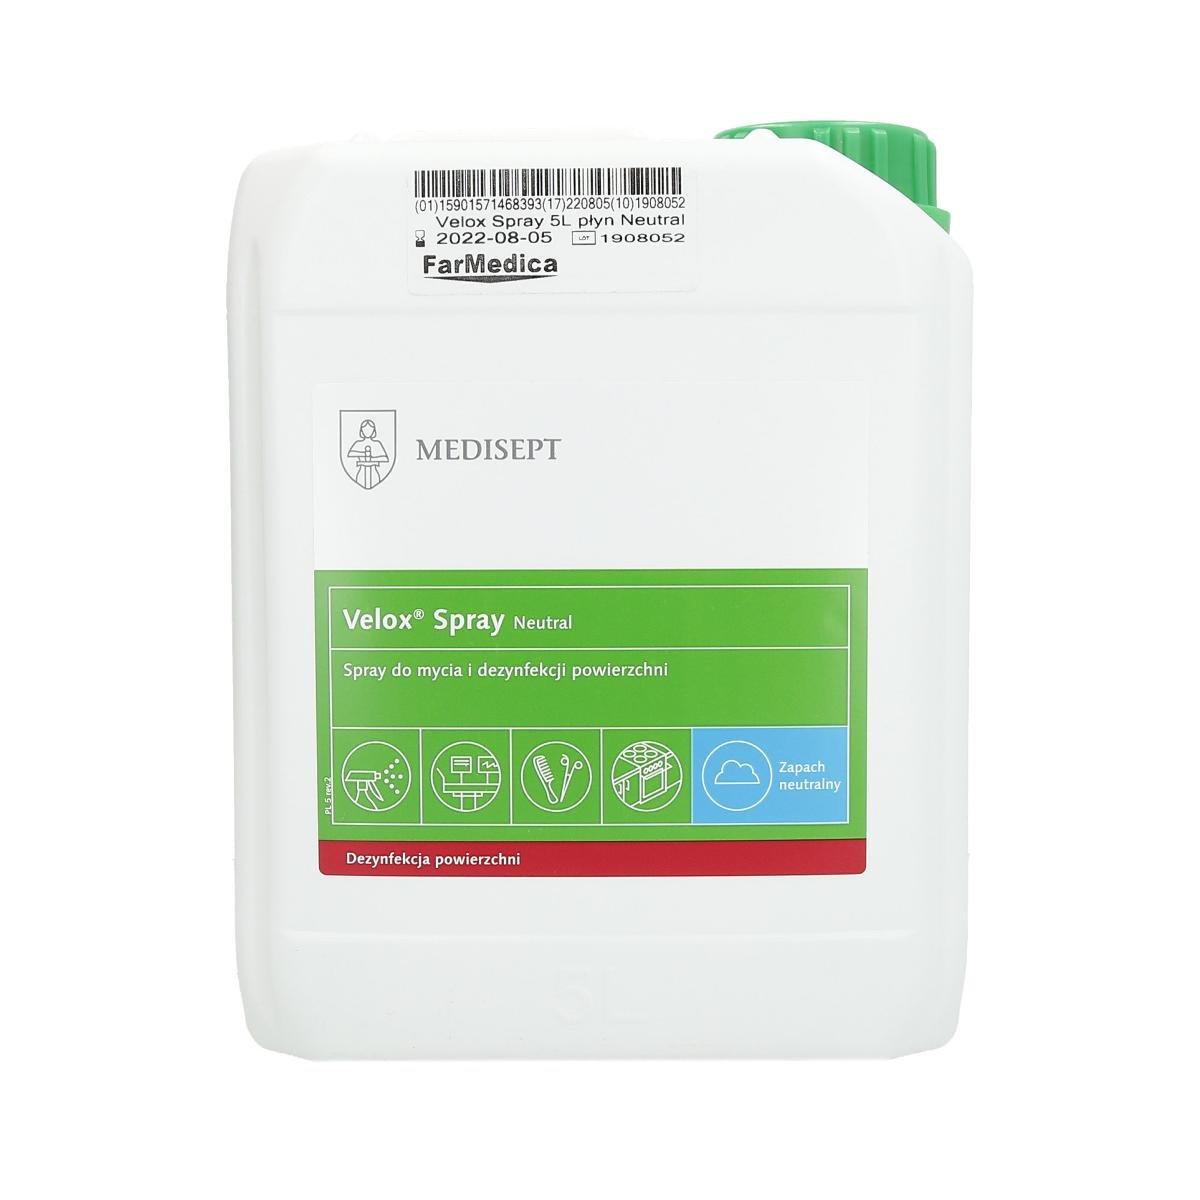 Medisept Velox Spray Neutral do mycia i dezynfekcji powierzchni Kanister 5 l | Nowy sklep, ponad 1000 promocji! NN-MMD-DPS5-002